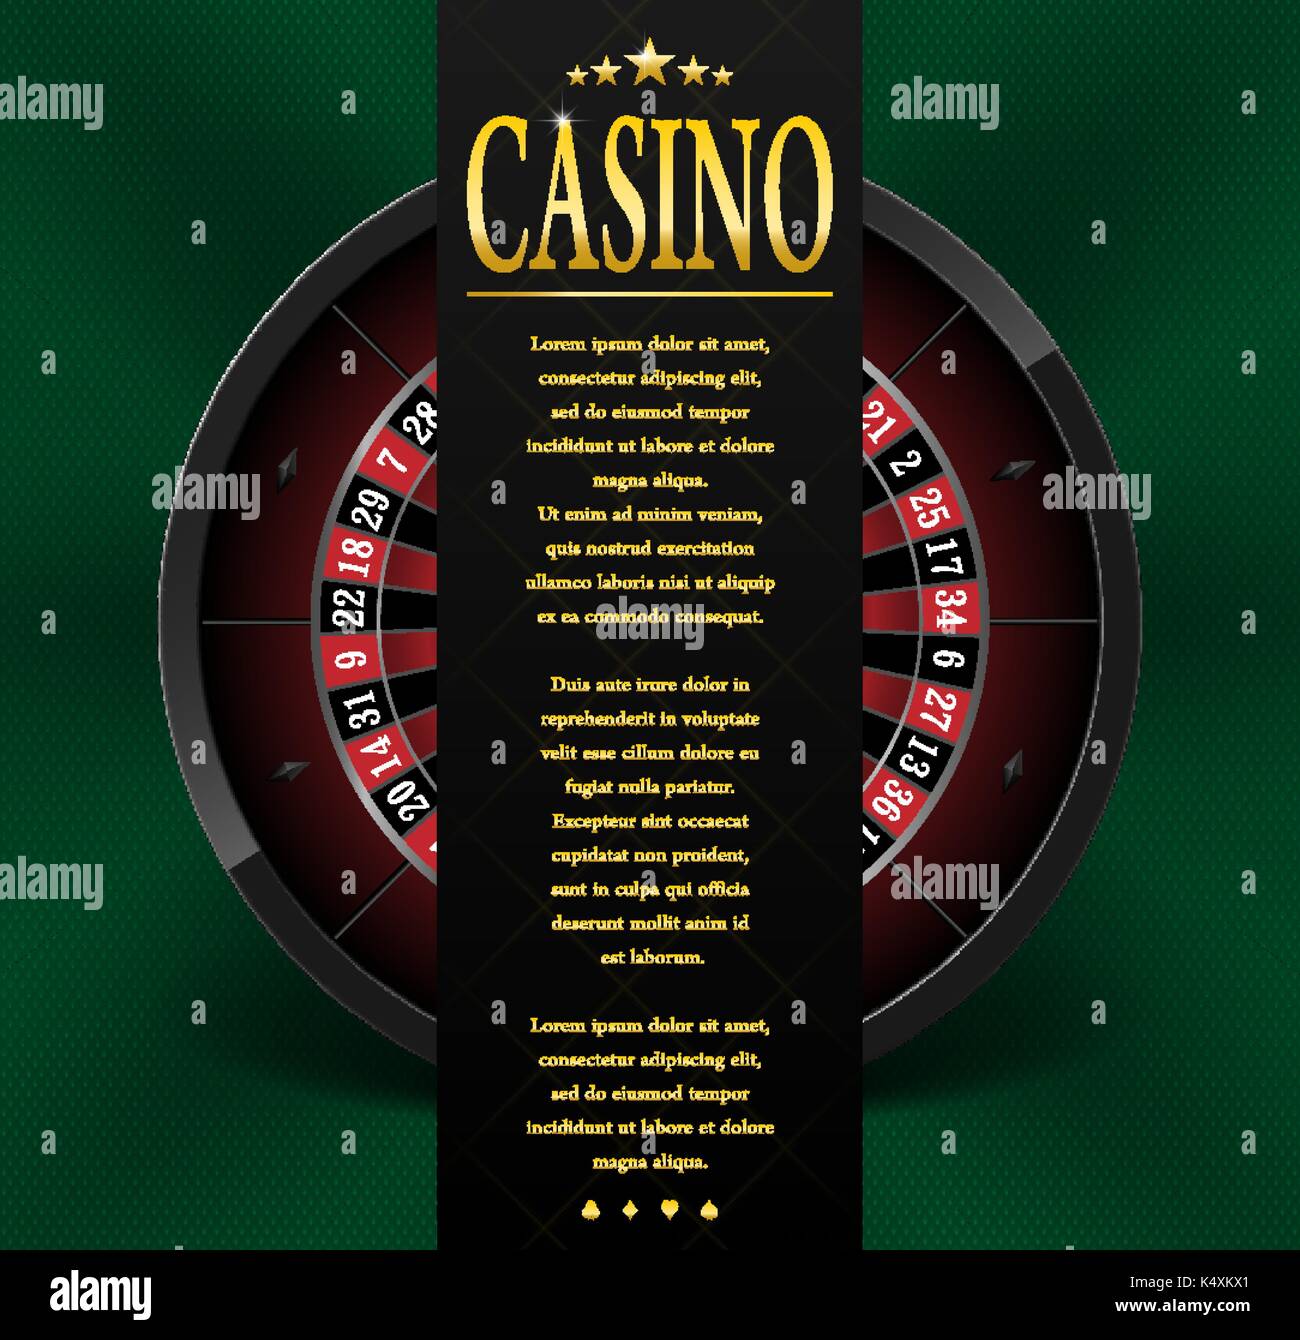 Casino Poster oder Flyer Design. Casino banner Vorlage mit Roulette Rad isoliert auf grünem Hintergrund. Spielen Casino Spiele. Vector Illustration. Stock Vektor